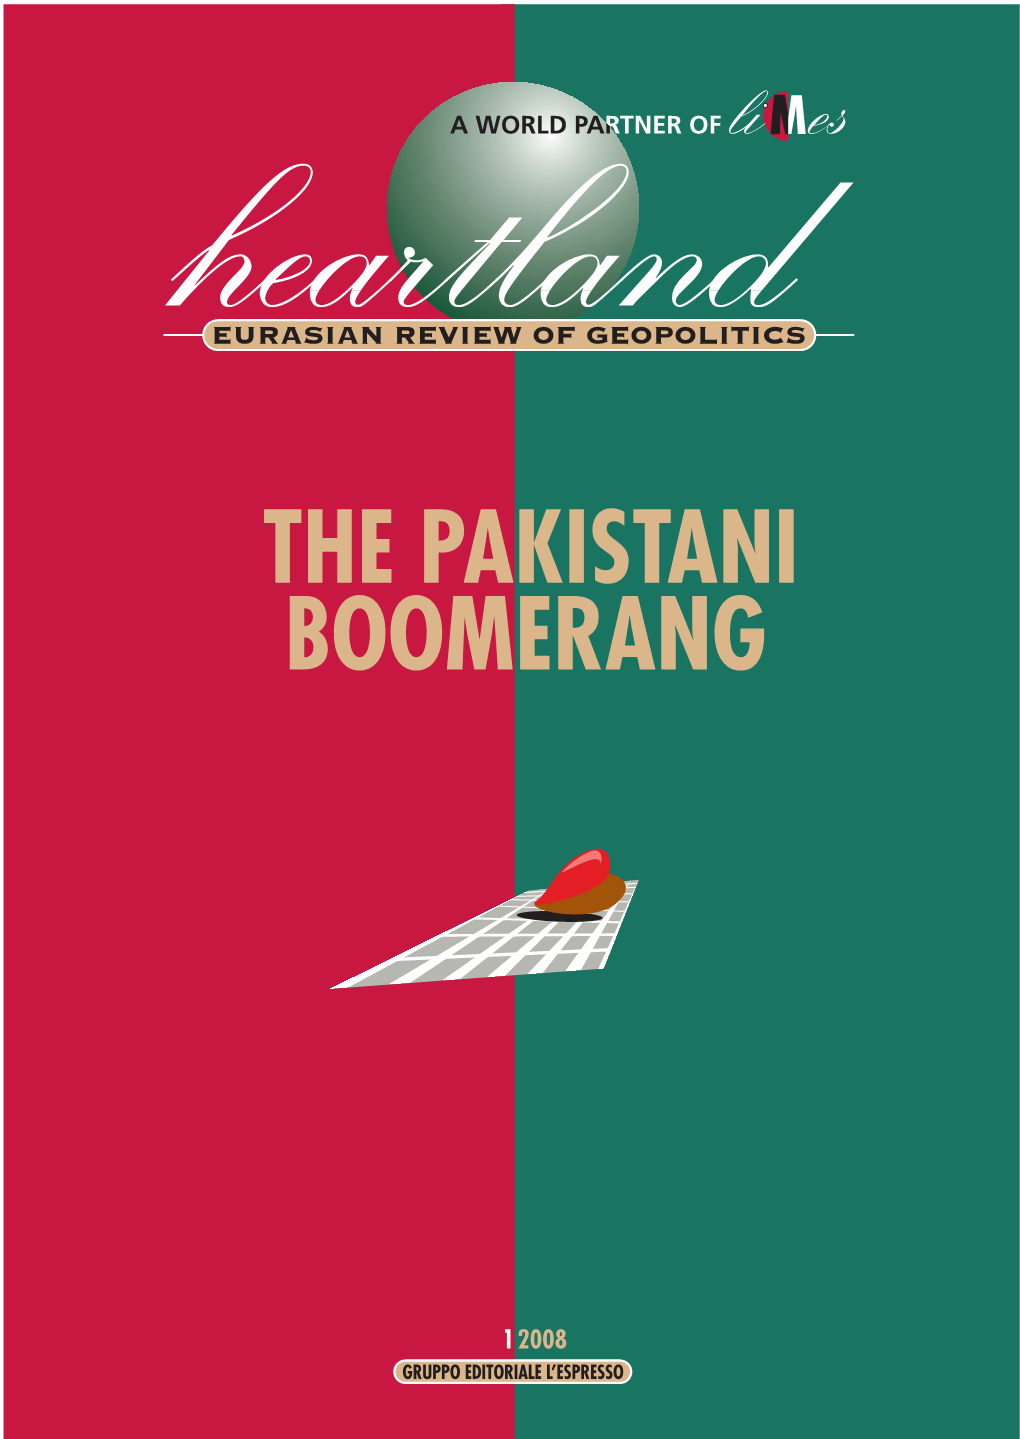 The Pakistani Boomerang